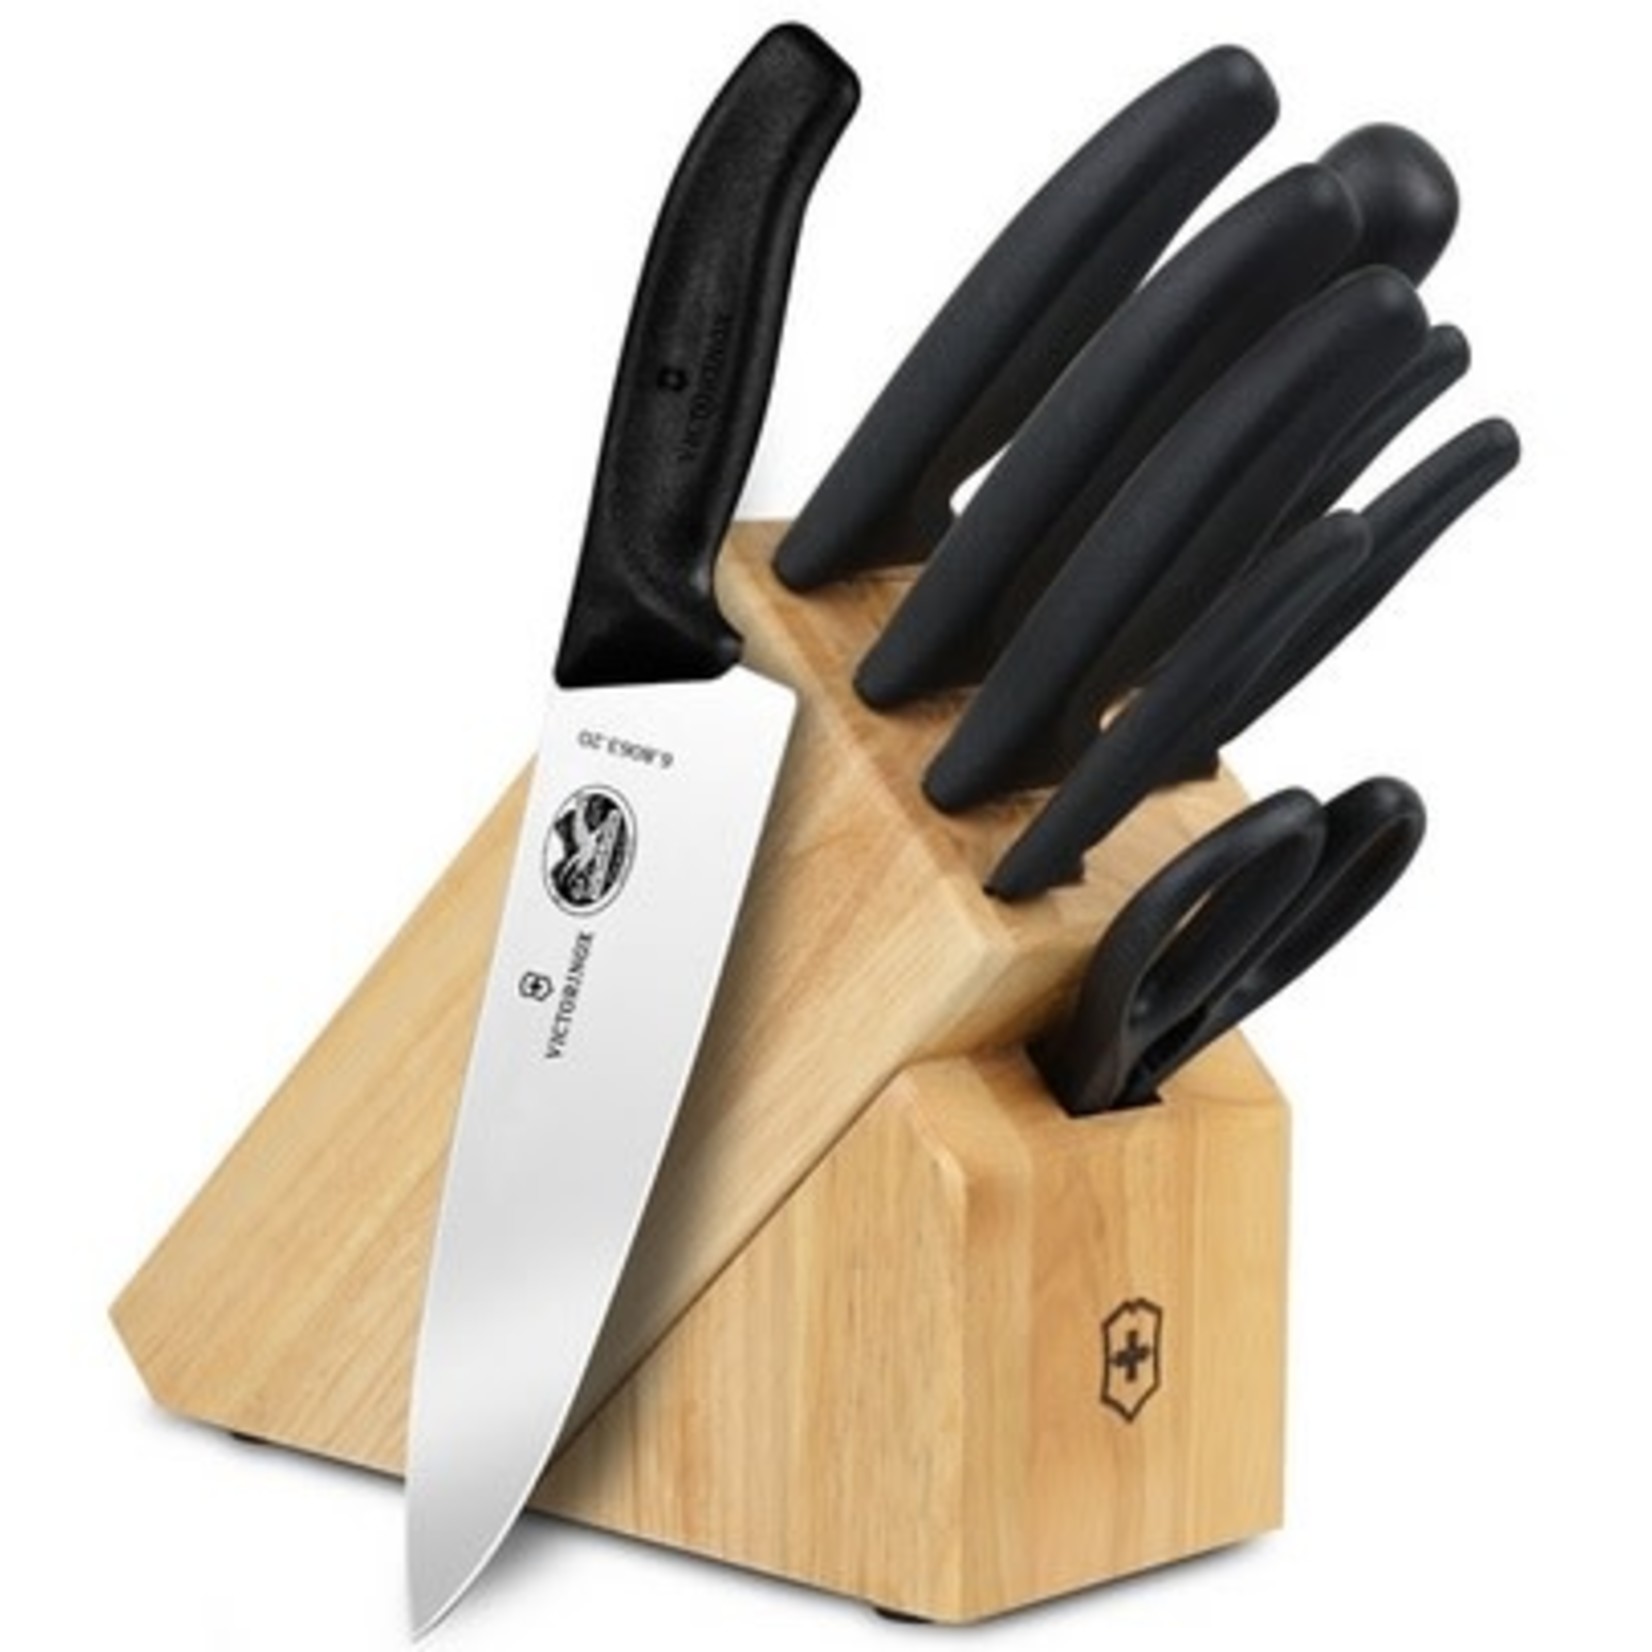 Couteaux de cuisine Victorinox Swiss Army Ens de 5 article promotionnel